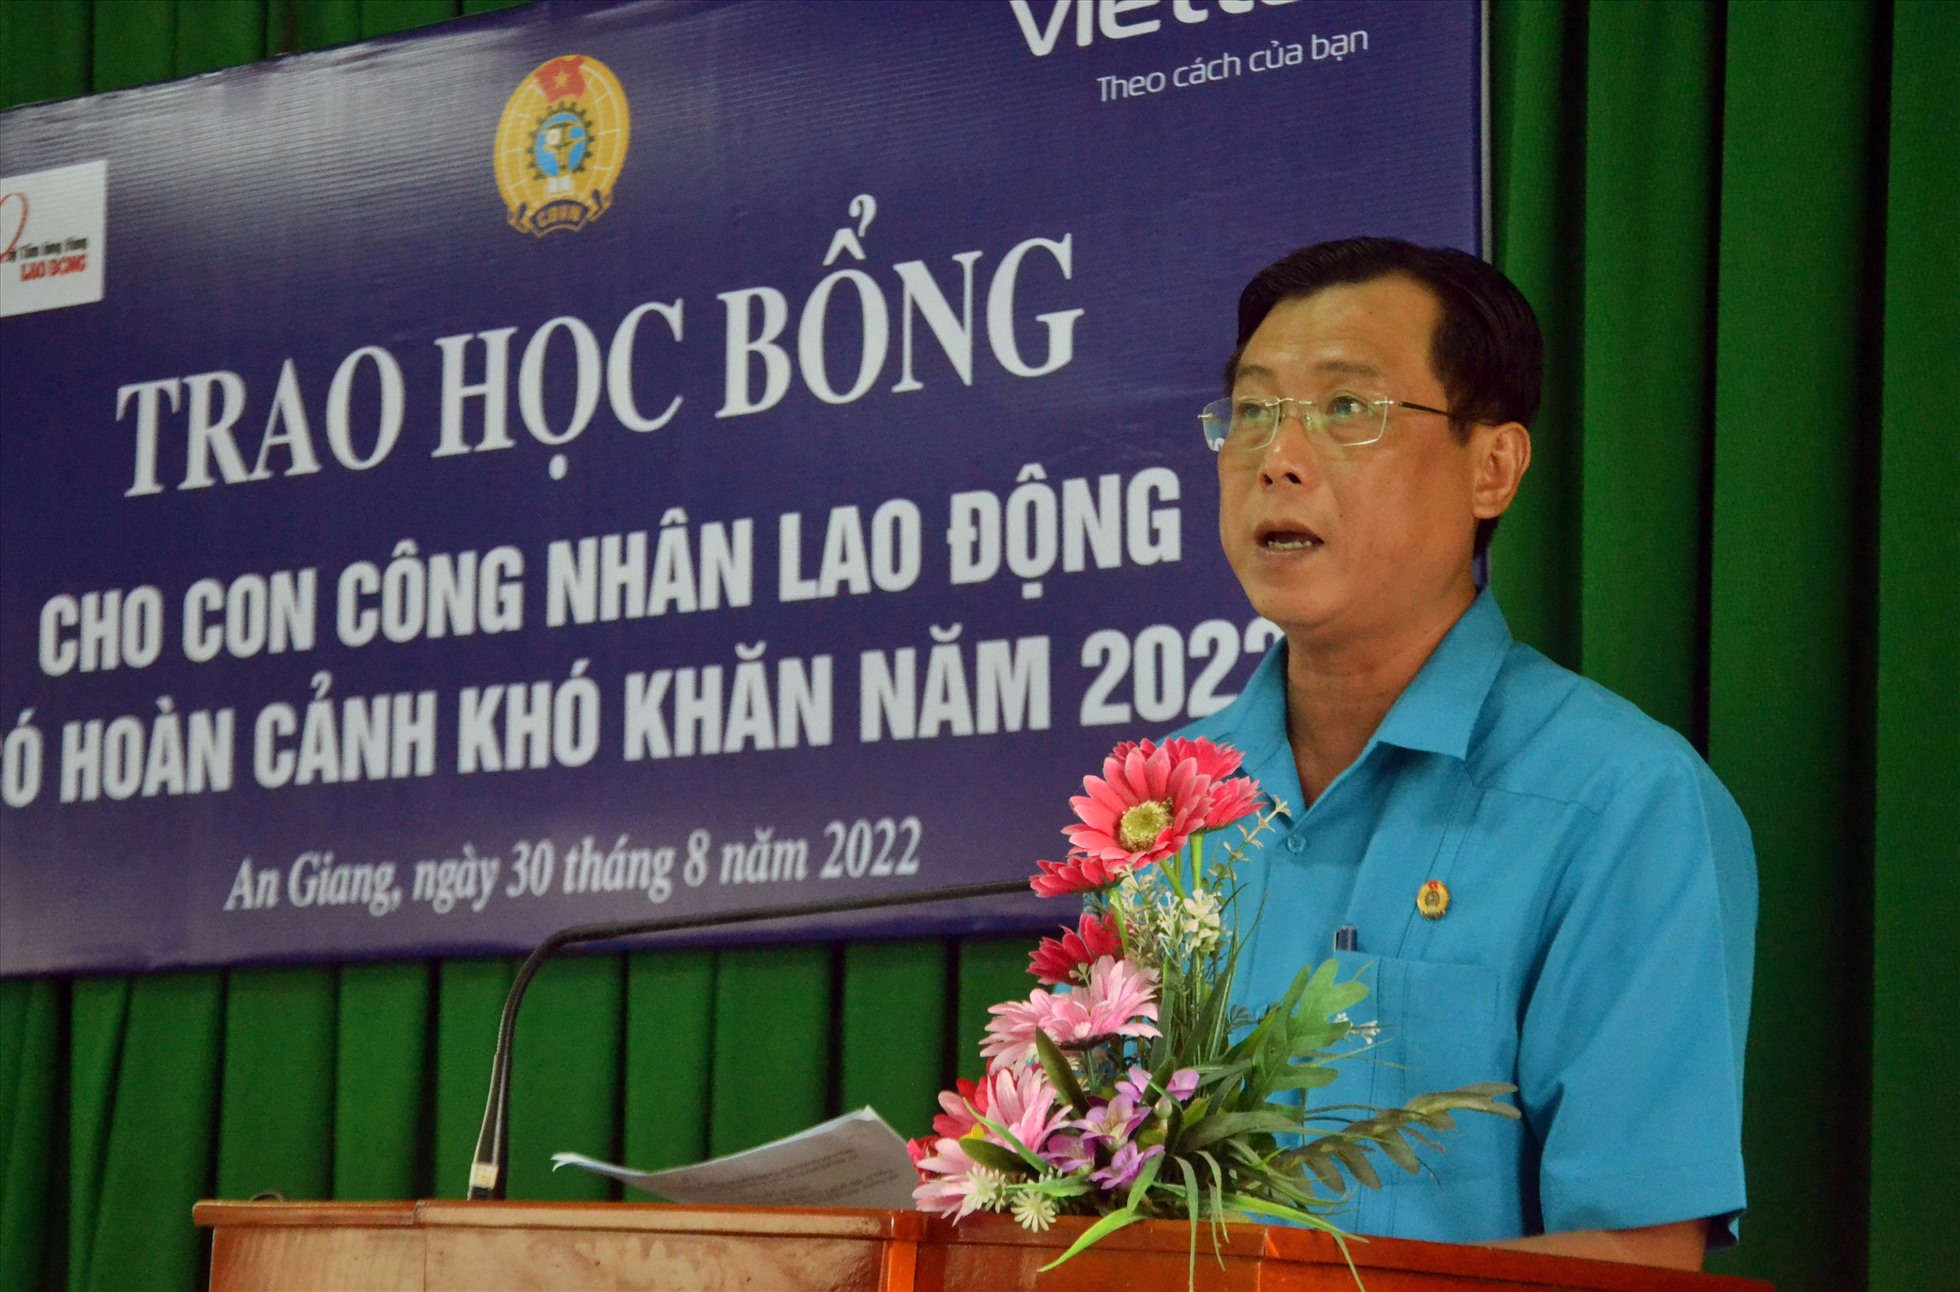 Phó Chủ tịch LĐLĐ tỉnh An Giang Nguyễn Nhật Tiến phát biểu tại buổi lễ trao học bổng. Ảnh: LT